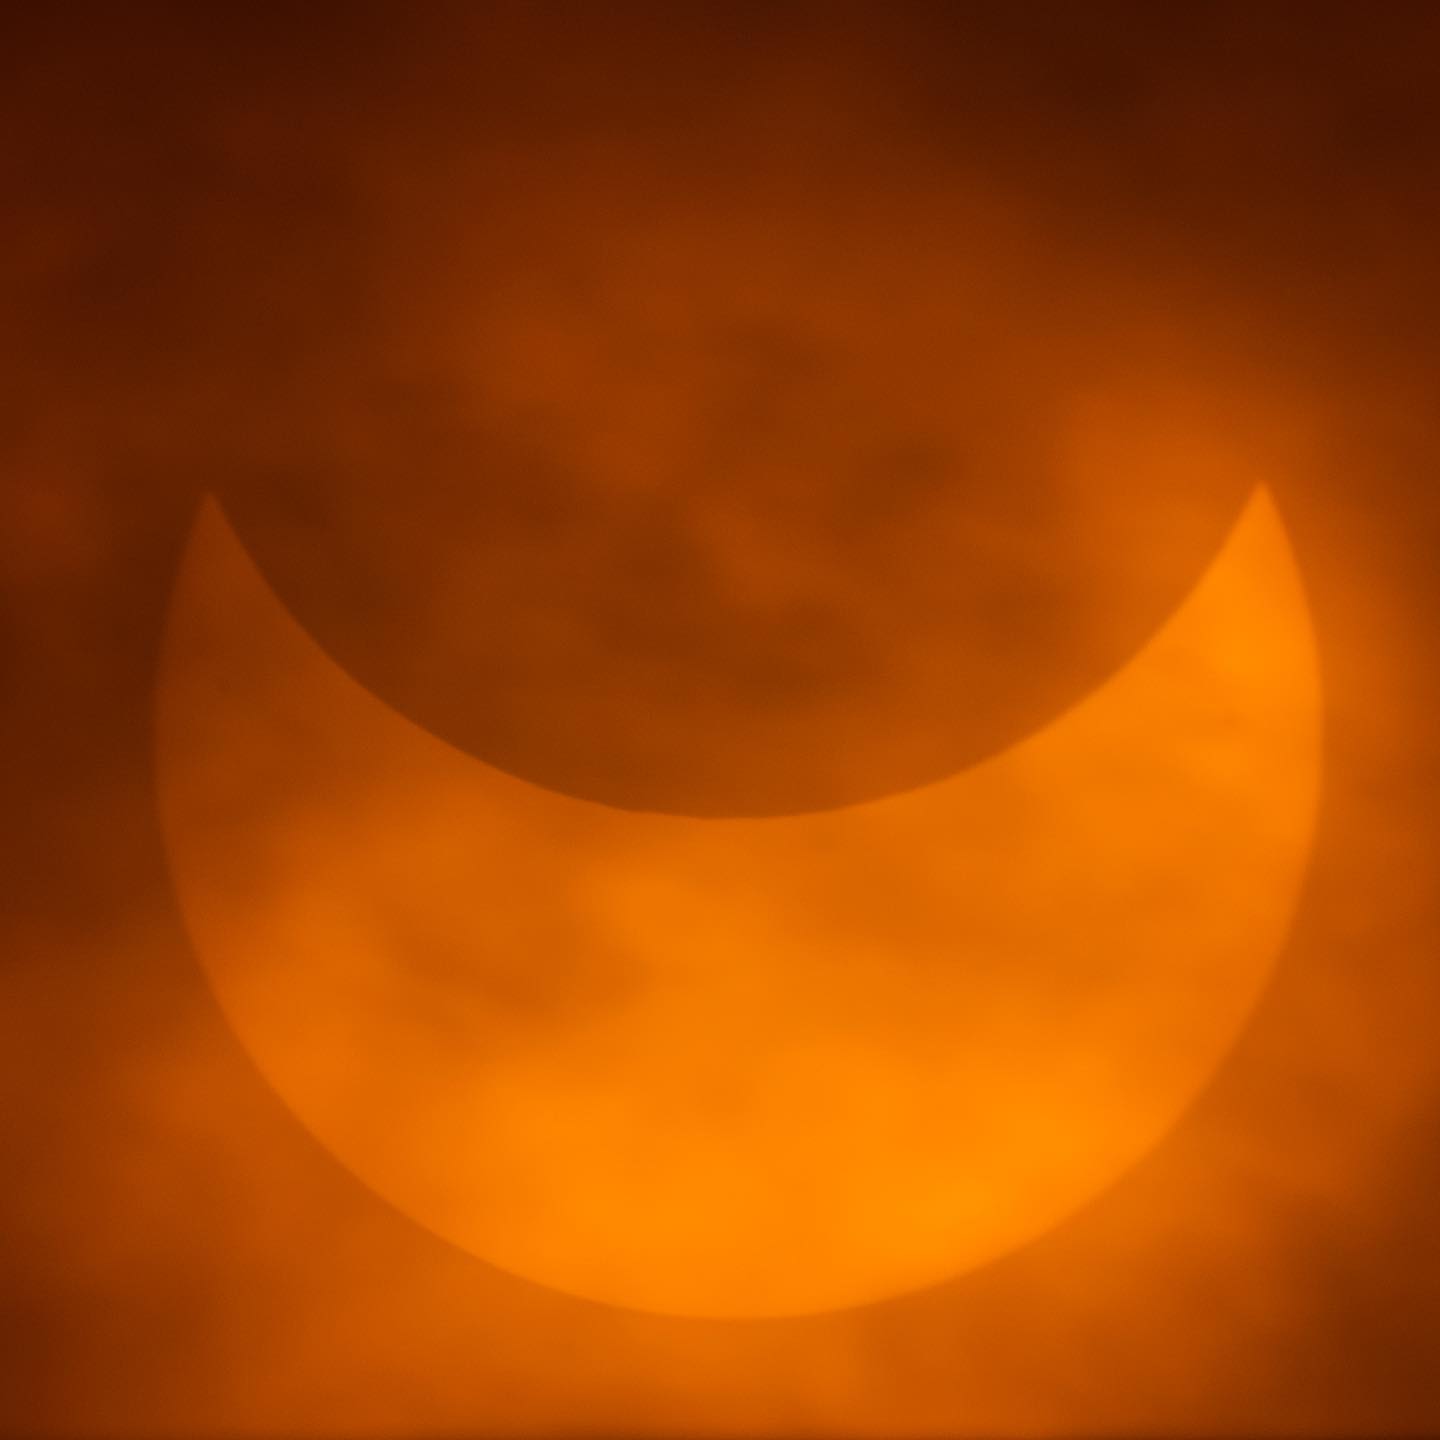 сонячне затемнення в Черкасах, фото сонячного затемнення